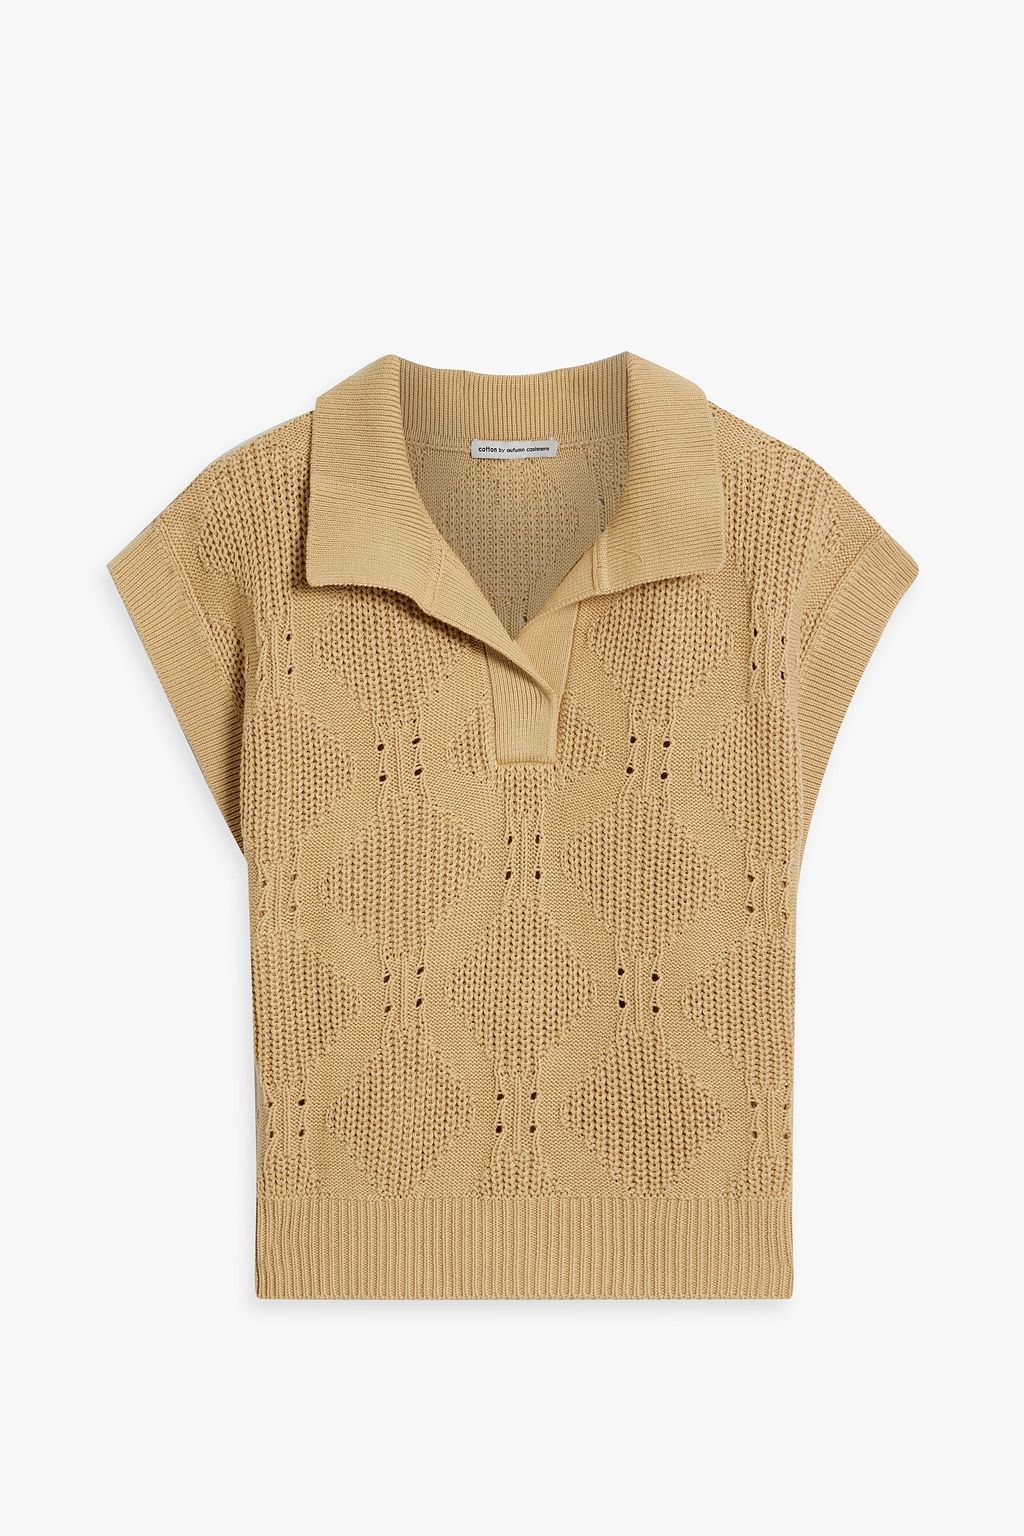 Хлопковый свитер-поло вязки пуантелле Cotton By Autumn Cashmere, песочный